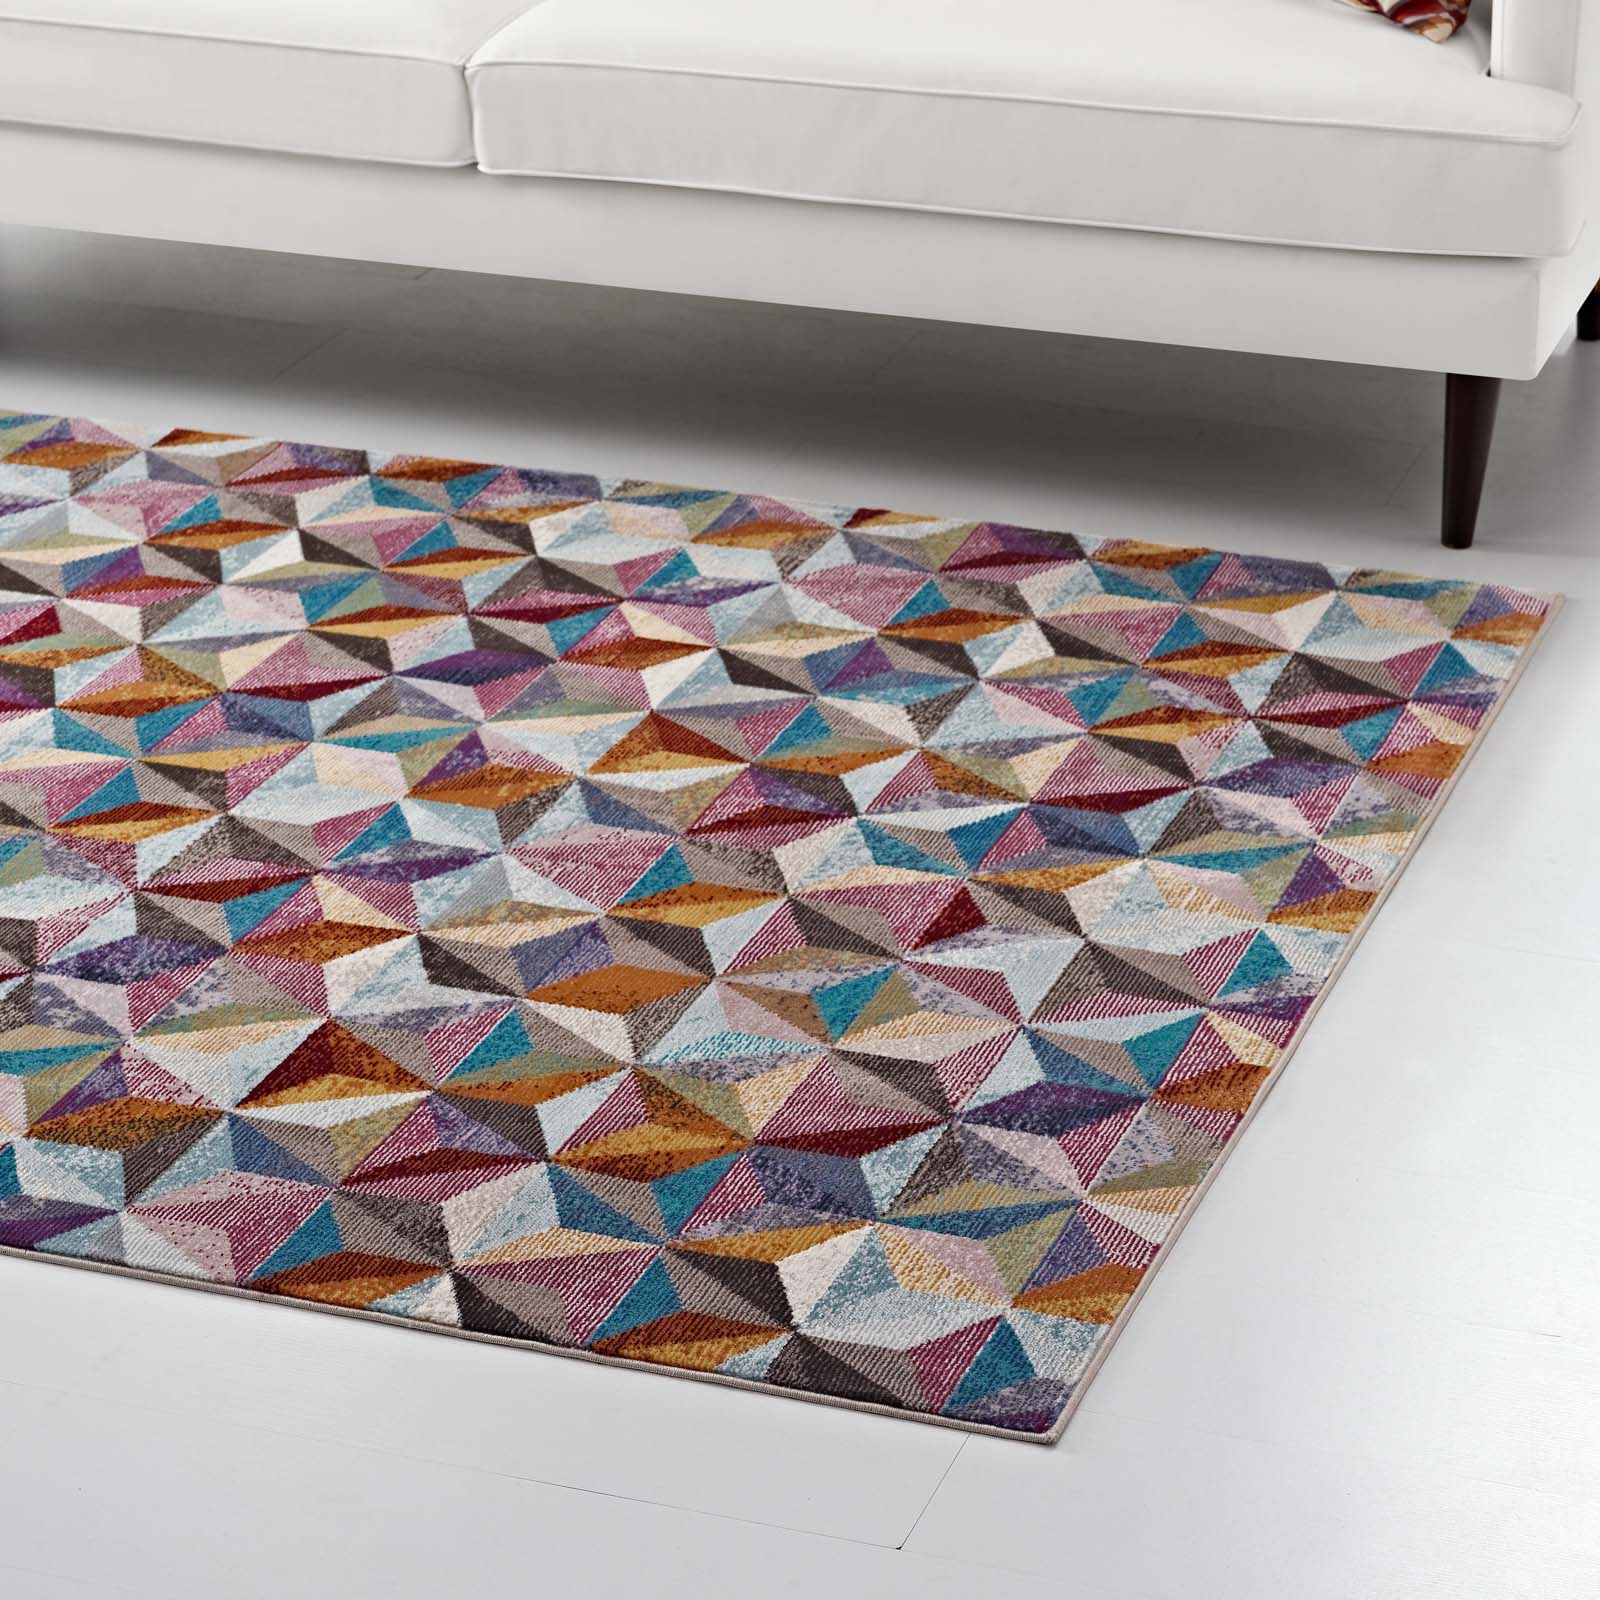 Arisa Geometric Hexagon Mosaic 5x8 Area Rug-Indoor Area Rug-Modway-Wall2Wall Furnishings